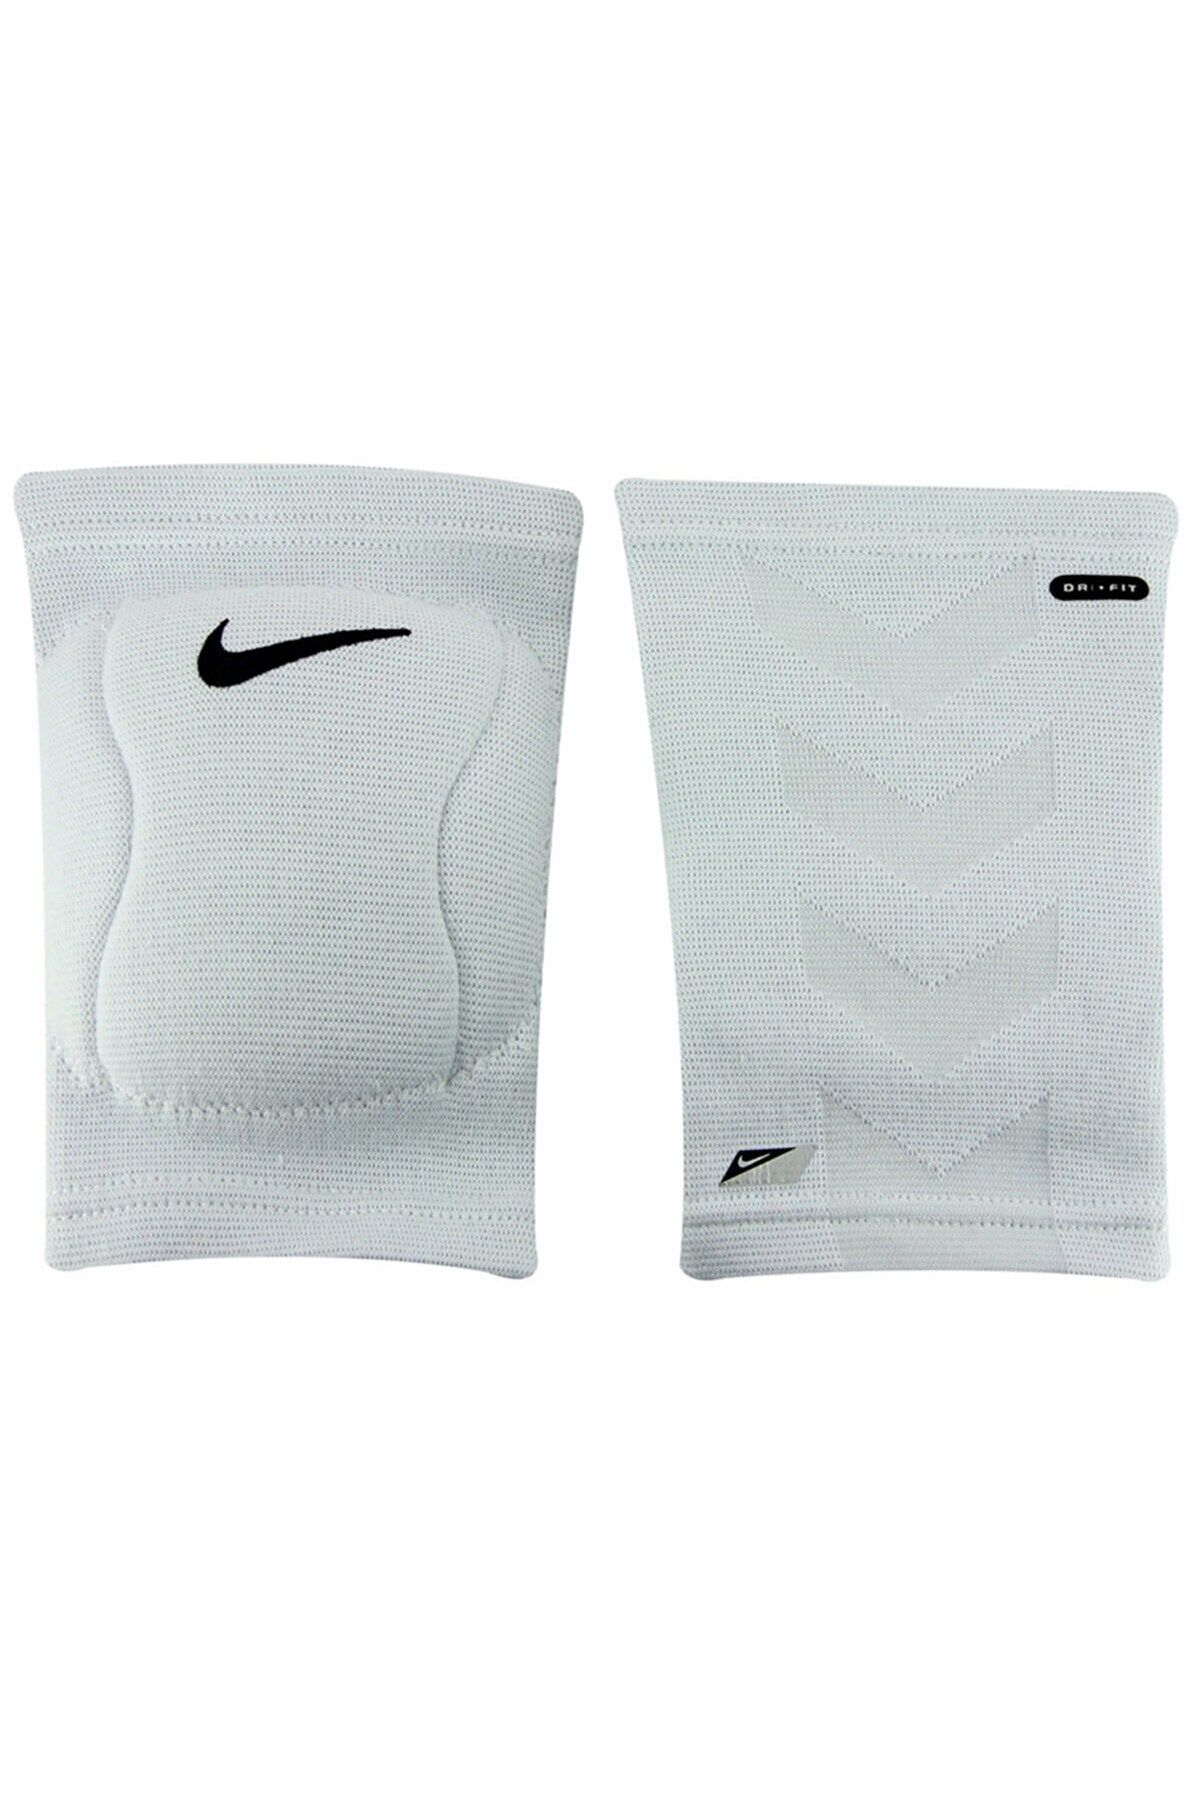 Nike Unisex White Dizlik Nvp07-100-100